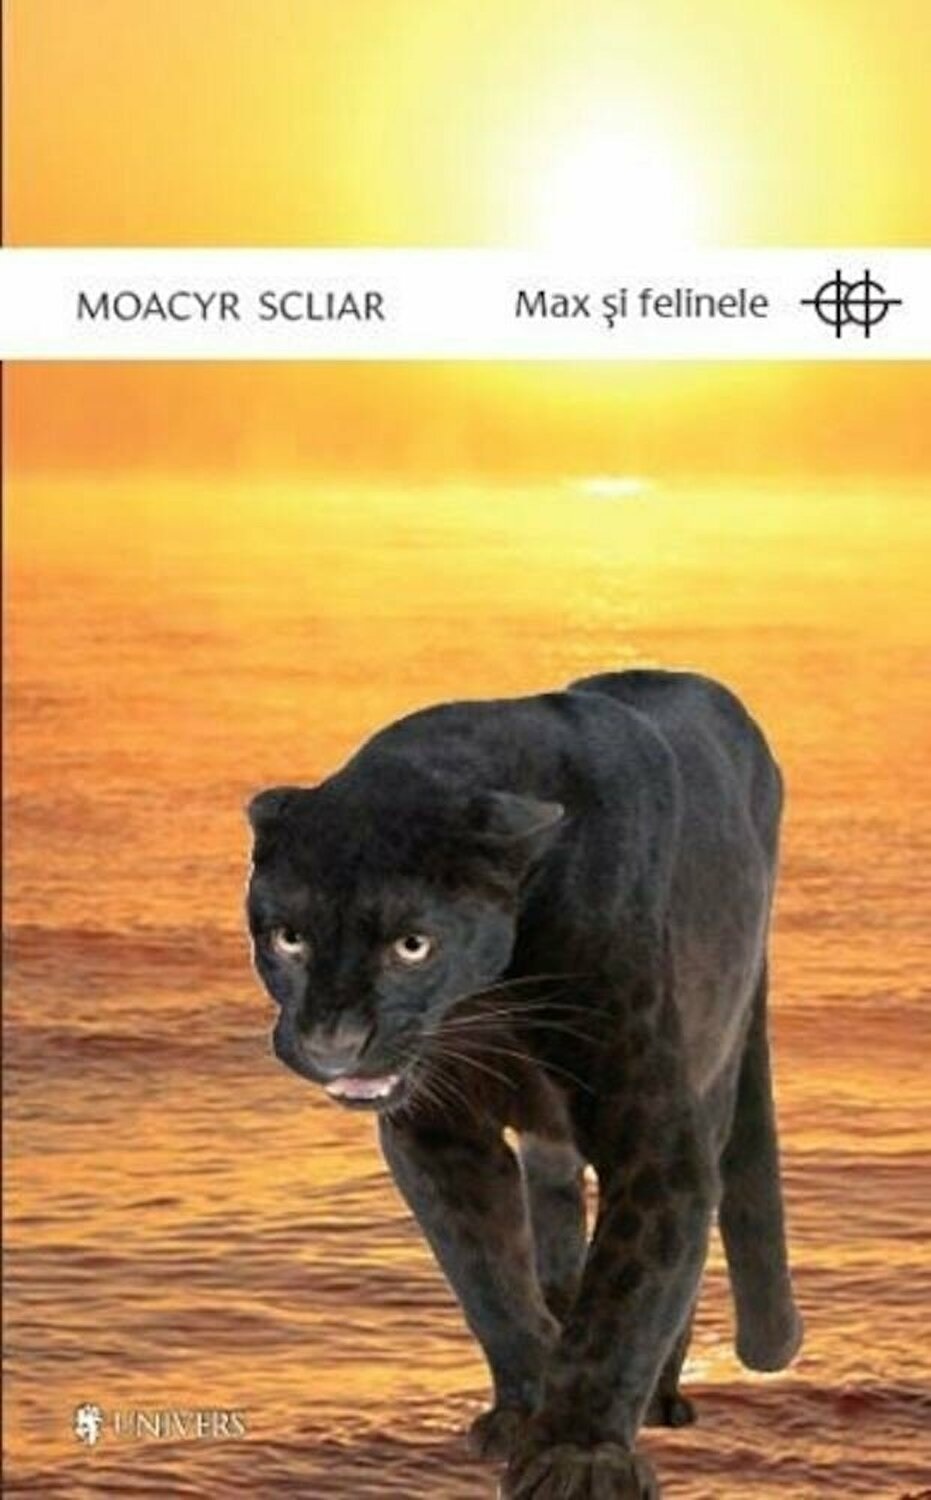 Max si felinele | Moacyr Scliar